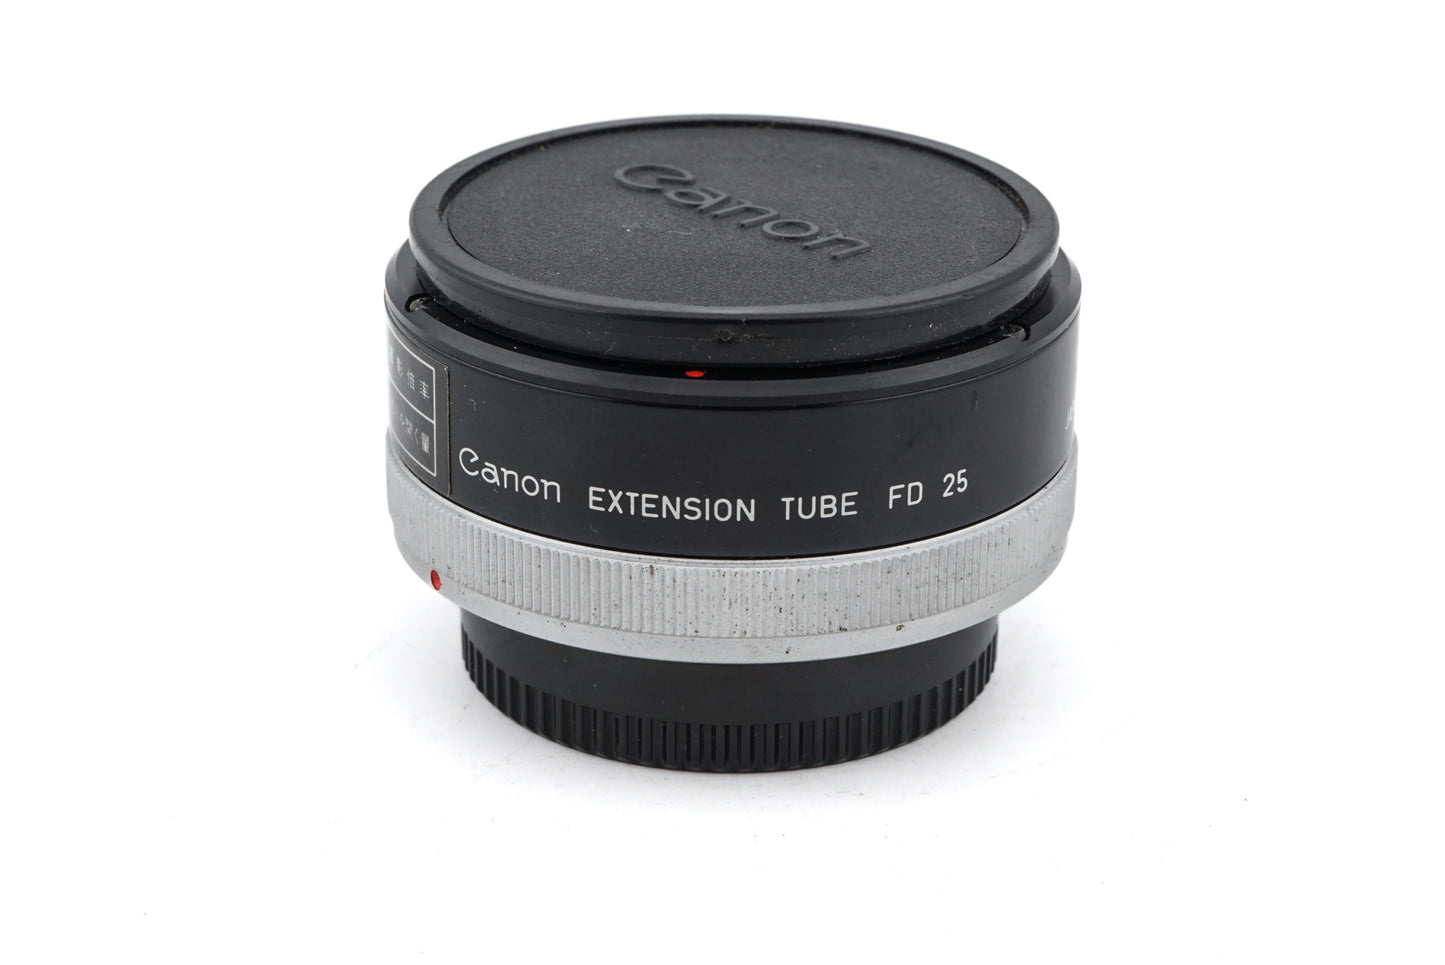 Canon Extension Tube FD 25 - Accessory